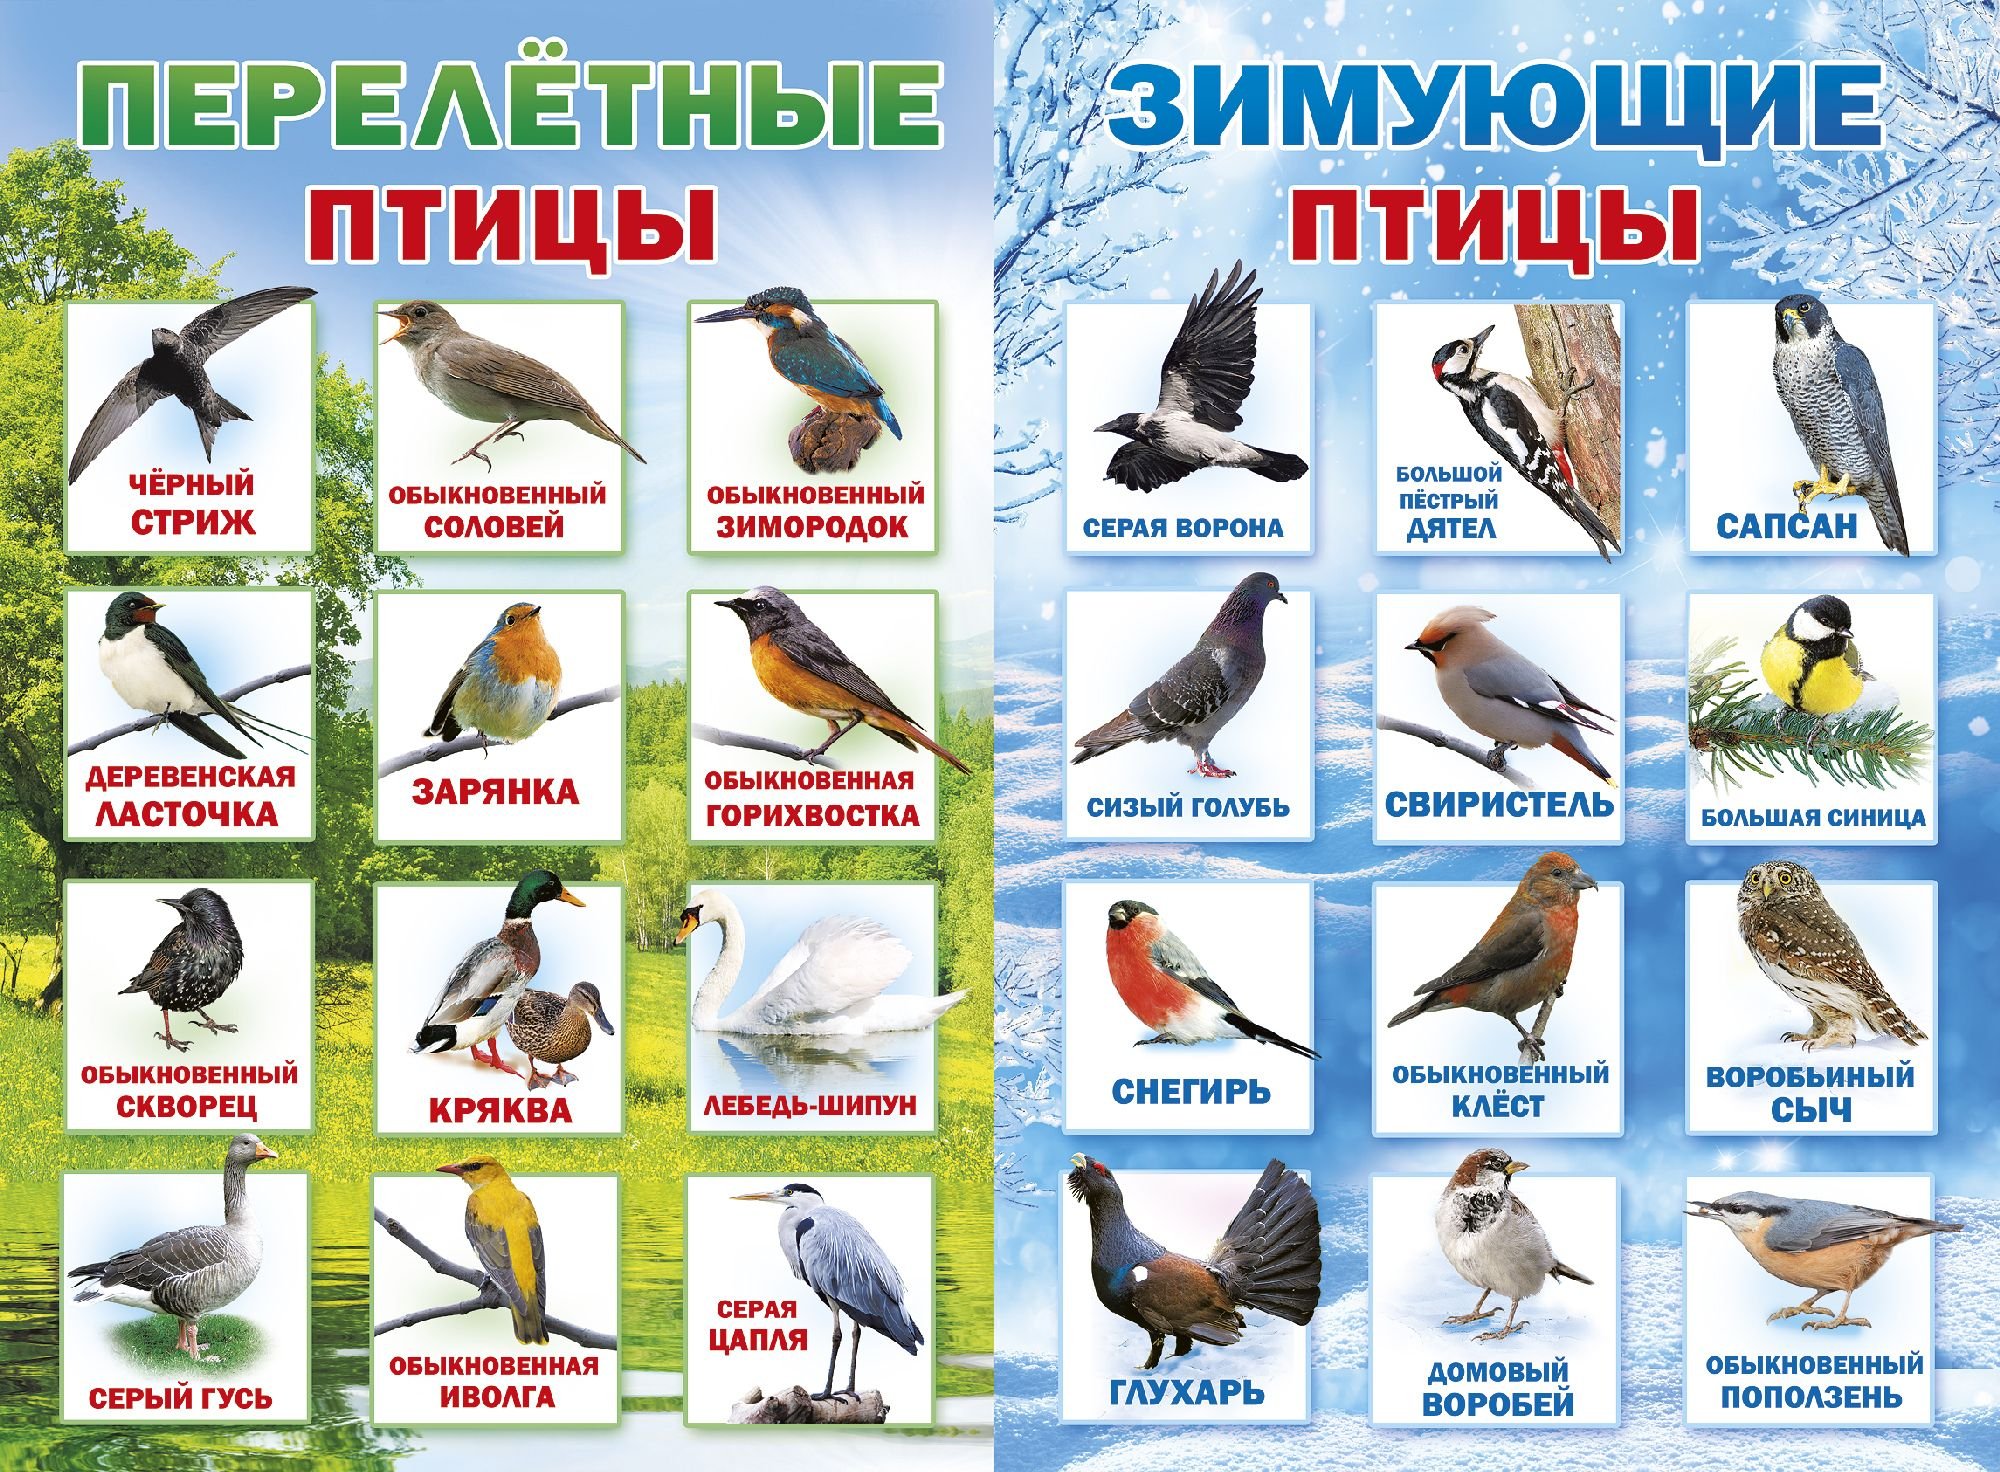 Перелетные птицы самарской области - 66 фото